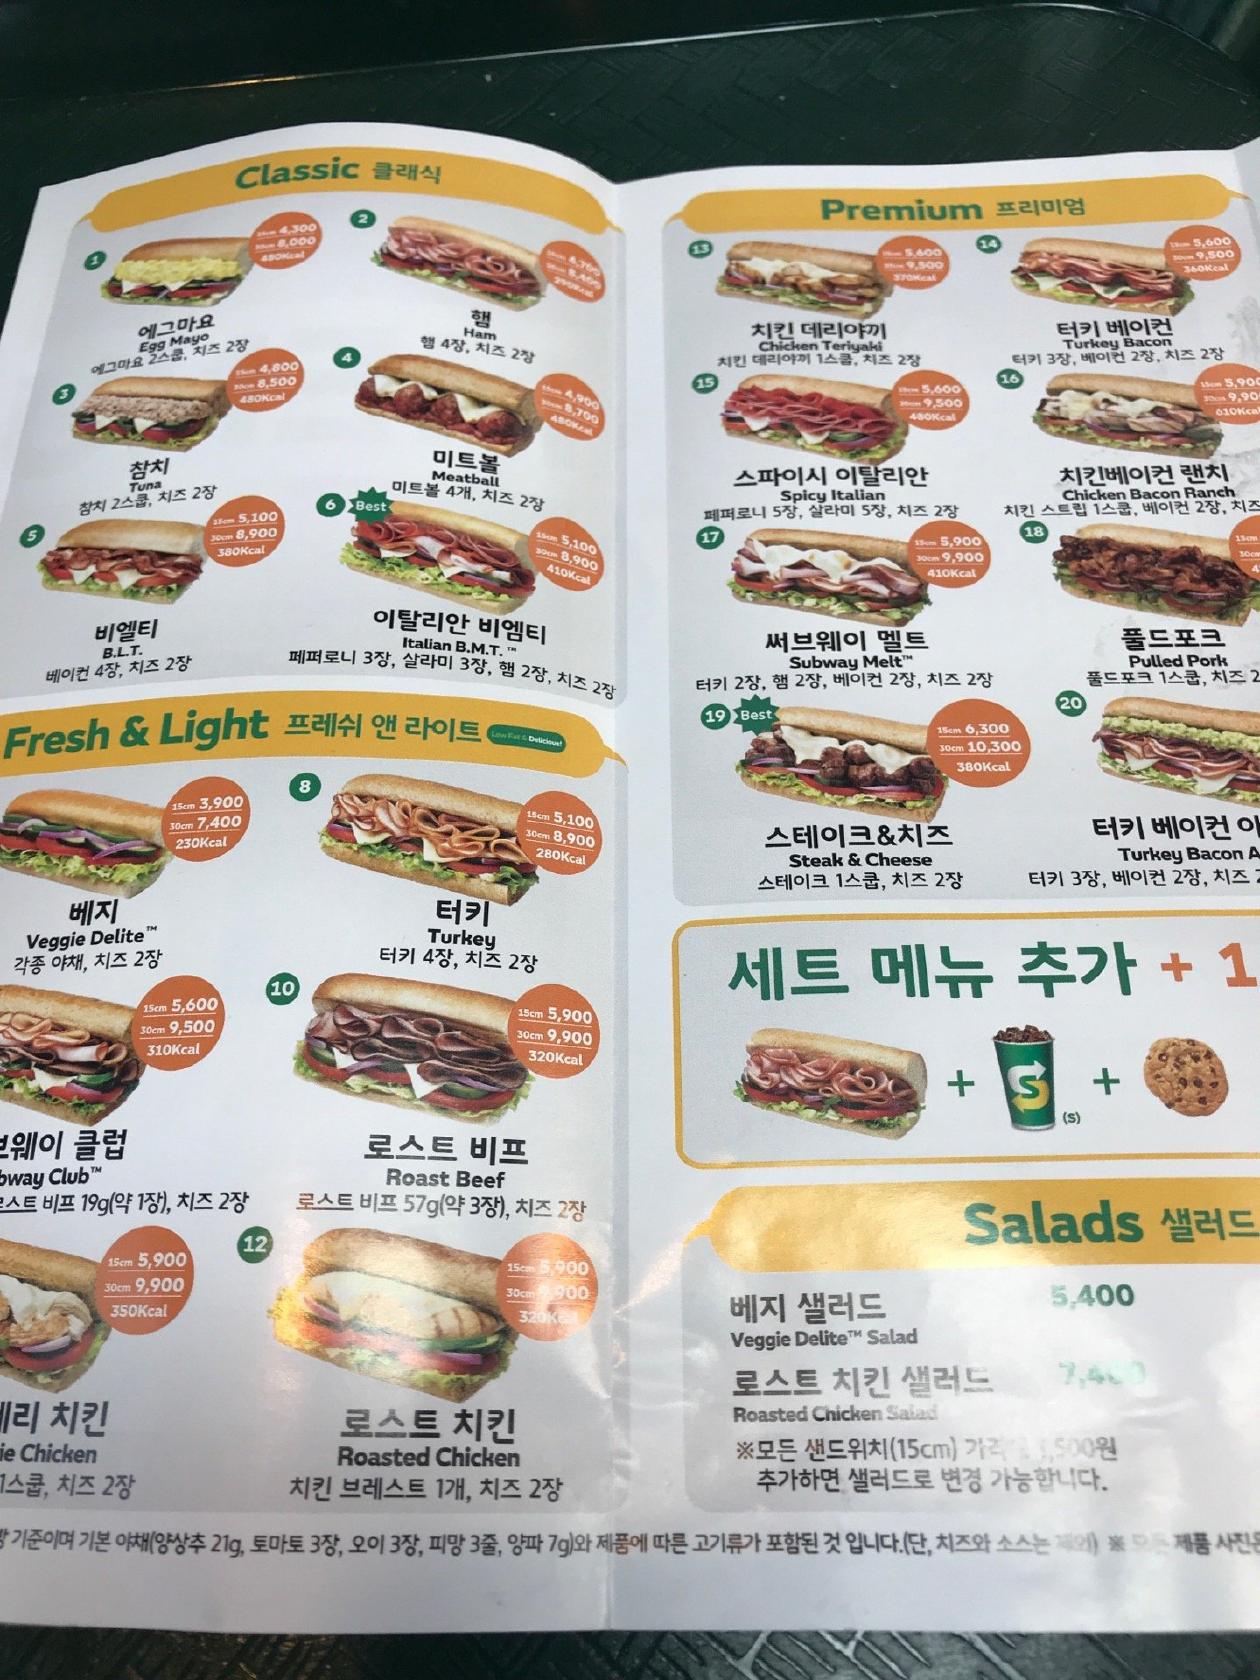 Menu at Subway restaurant, Seongnam-si, Sampyeong-dong